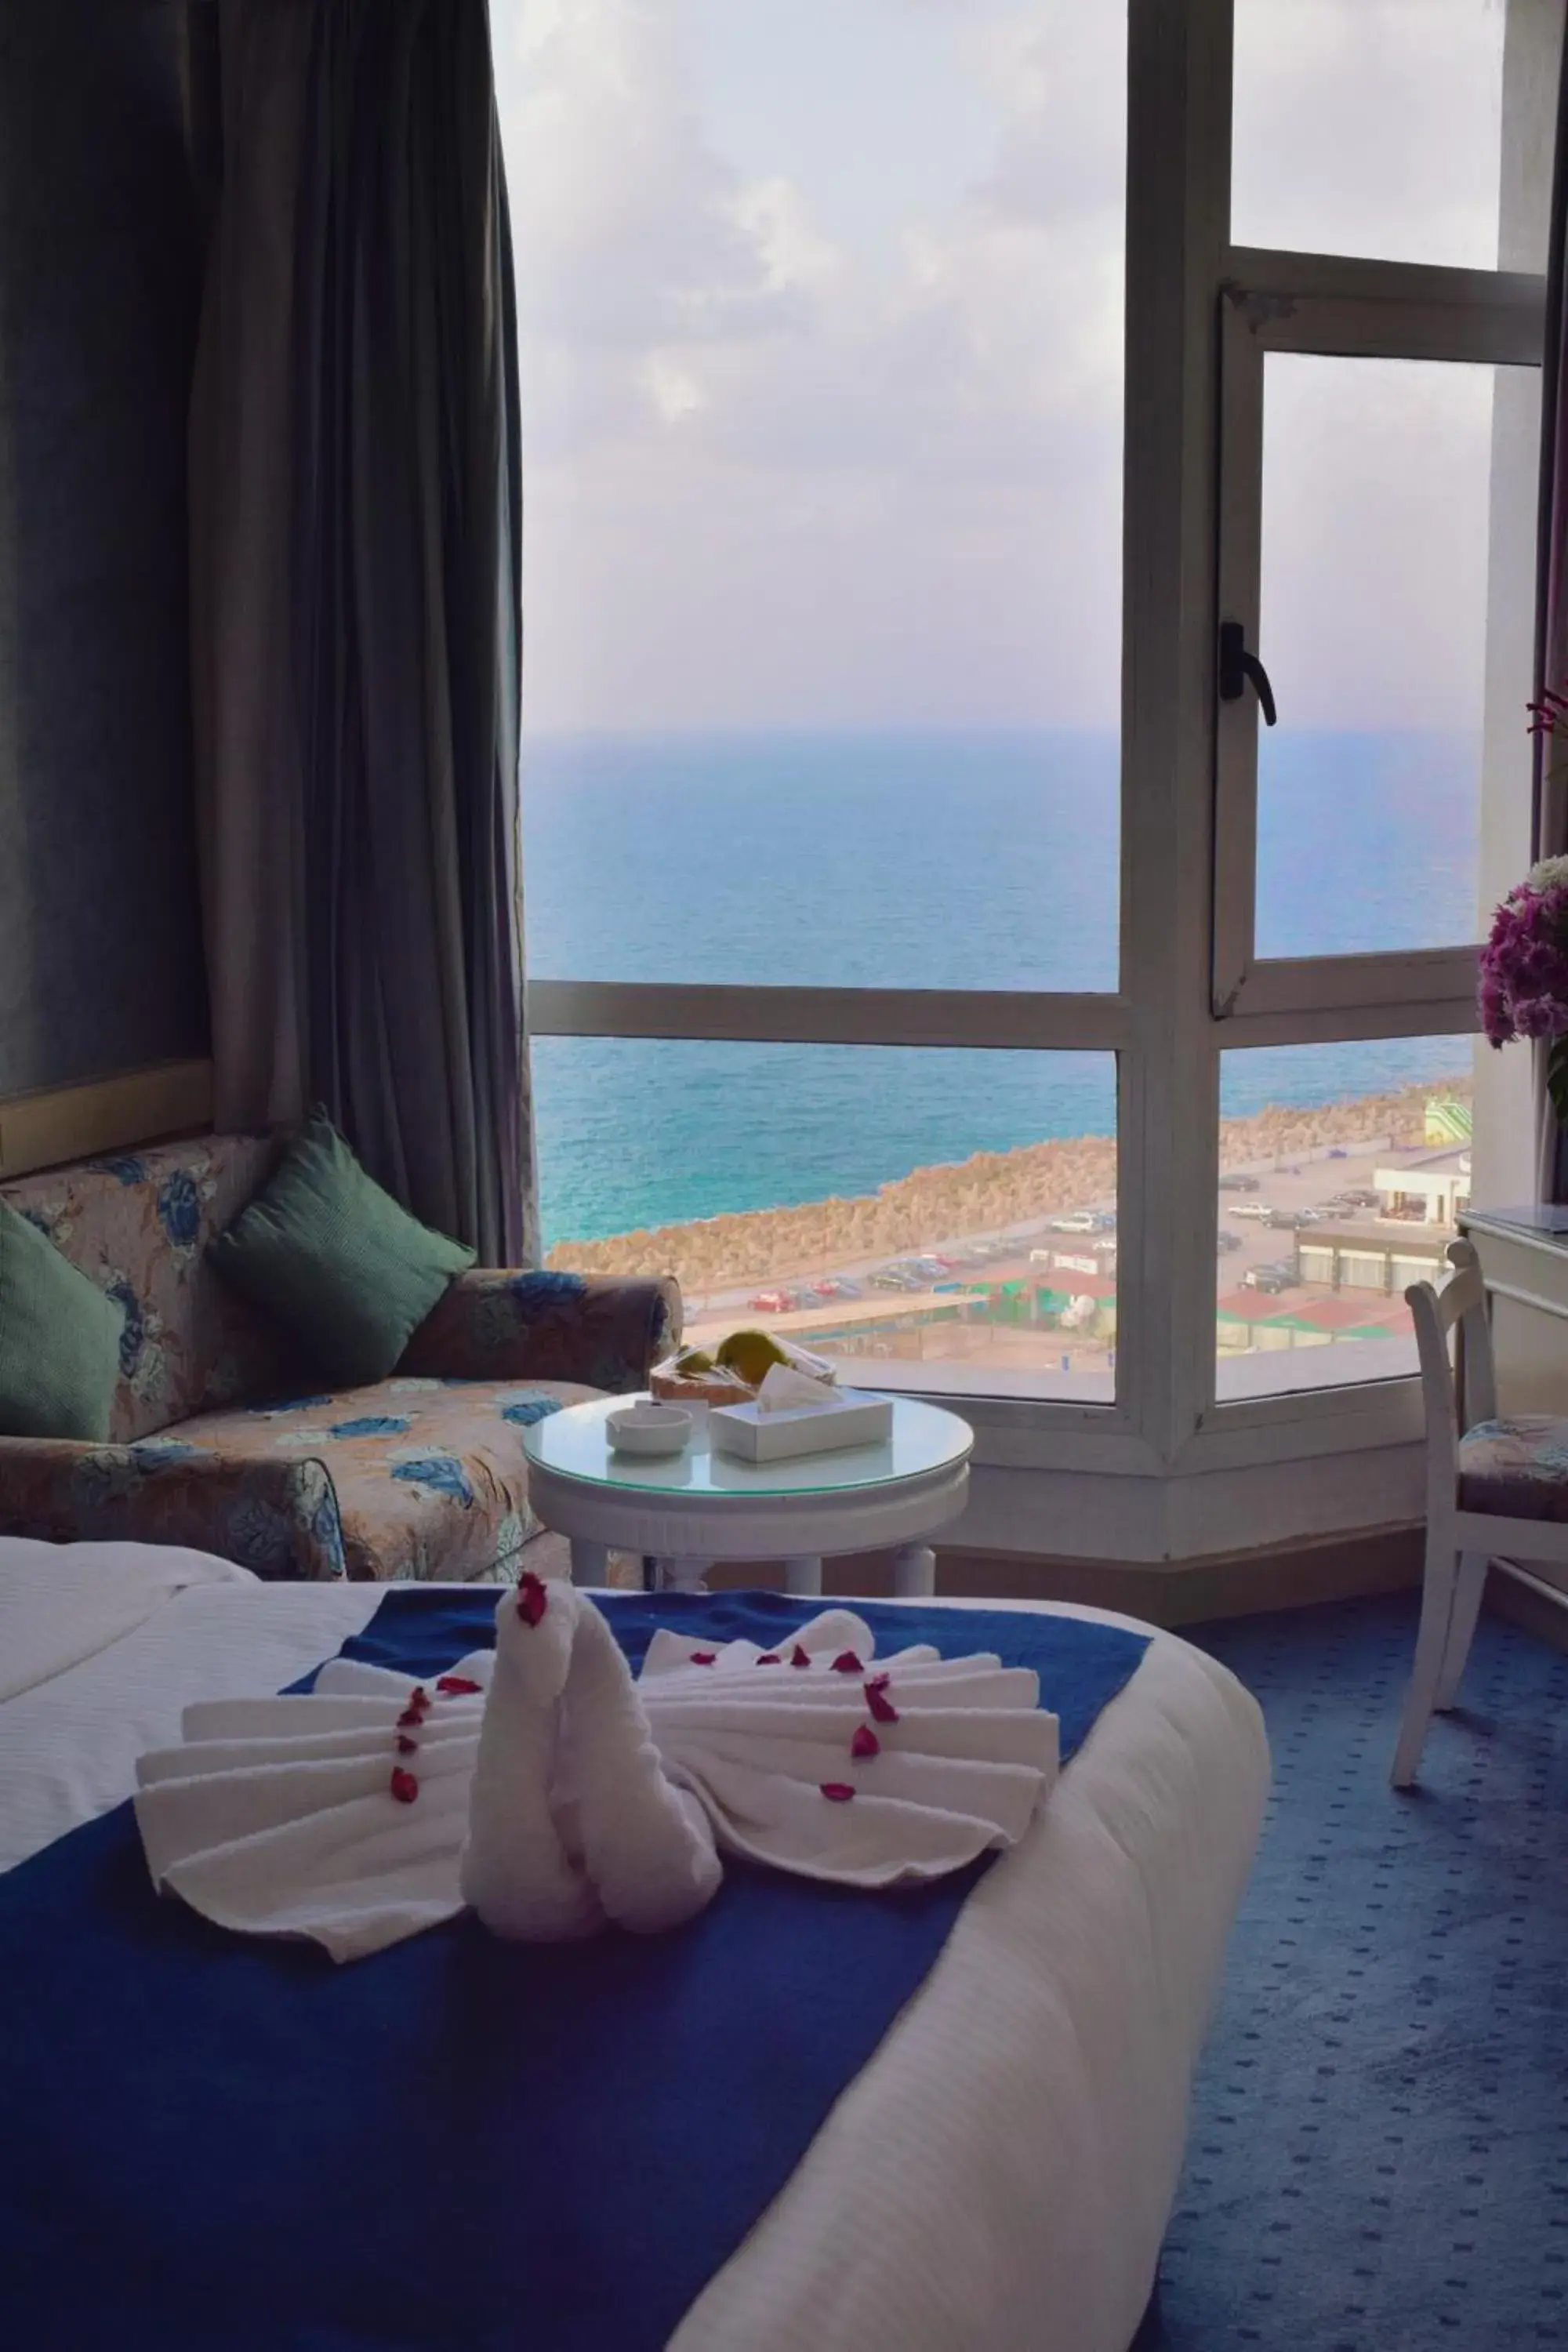 Sea View in Romance Alexandria Hotel